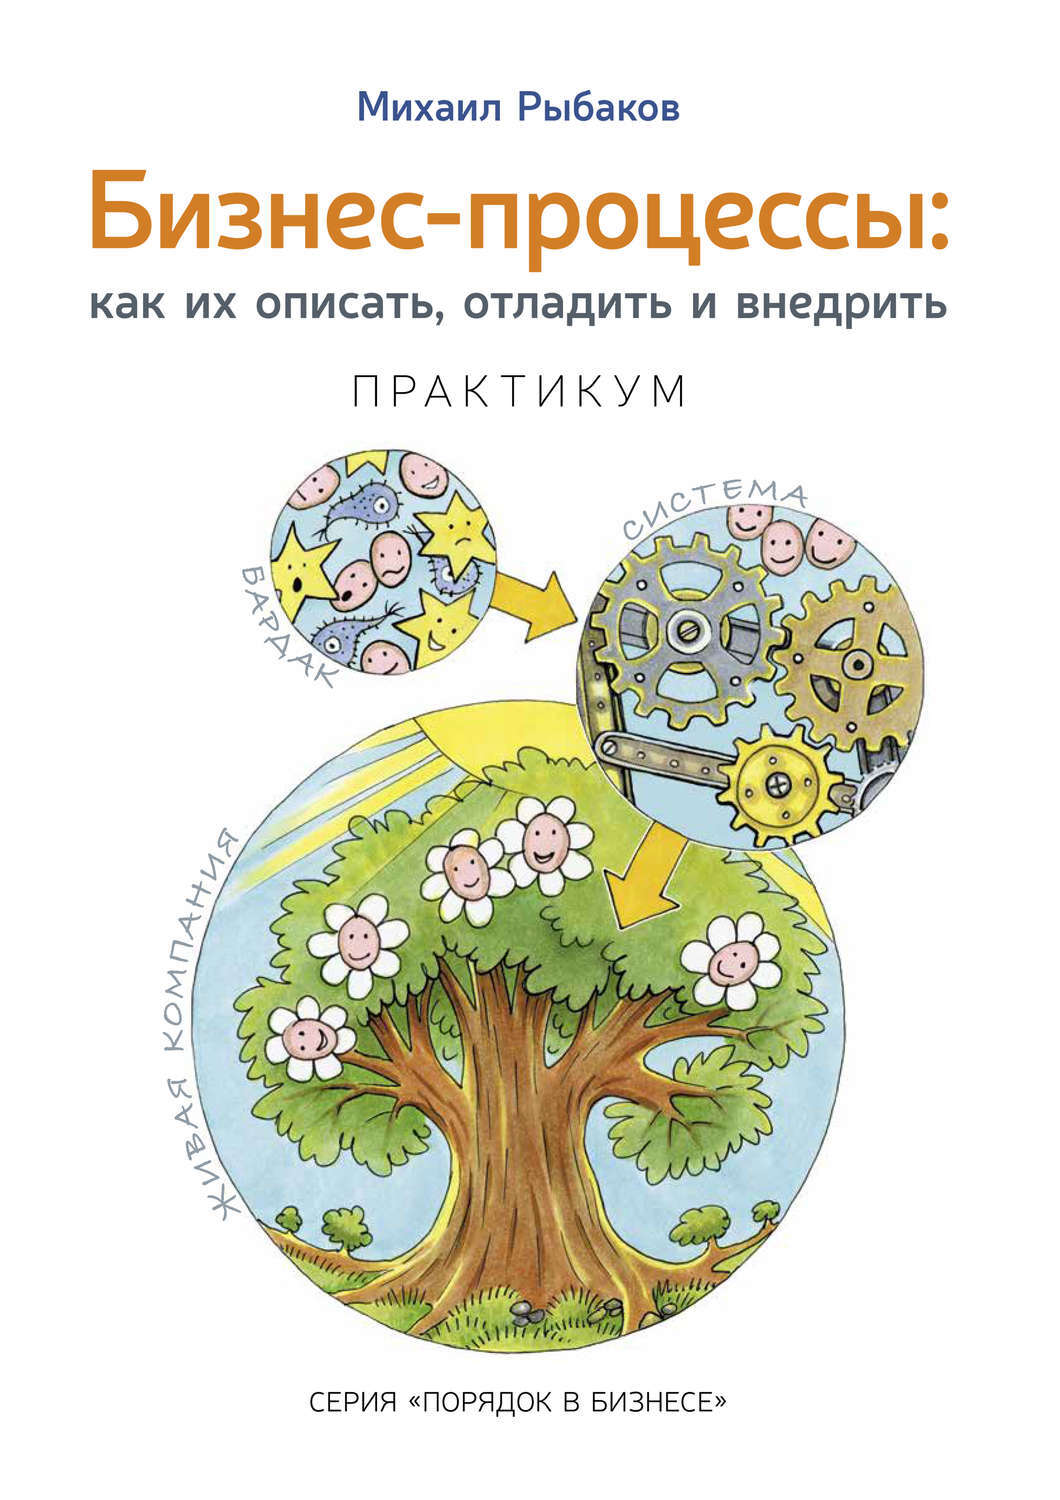 Обзор книги «Бизнес-процессы: как их описать, отладить и внедрить», автор Михаил Рыбаков.